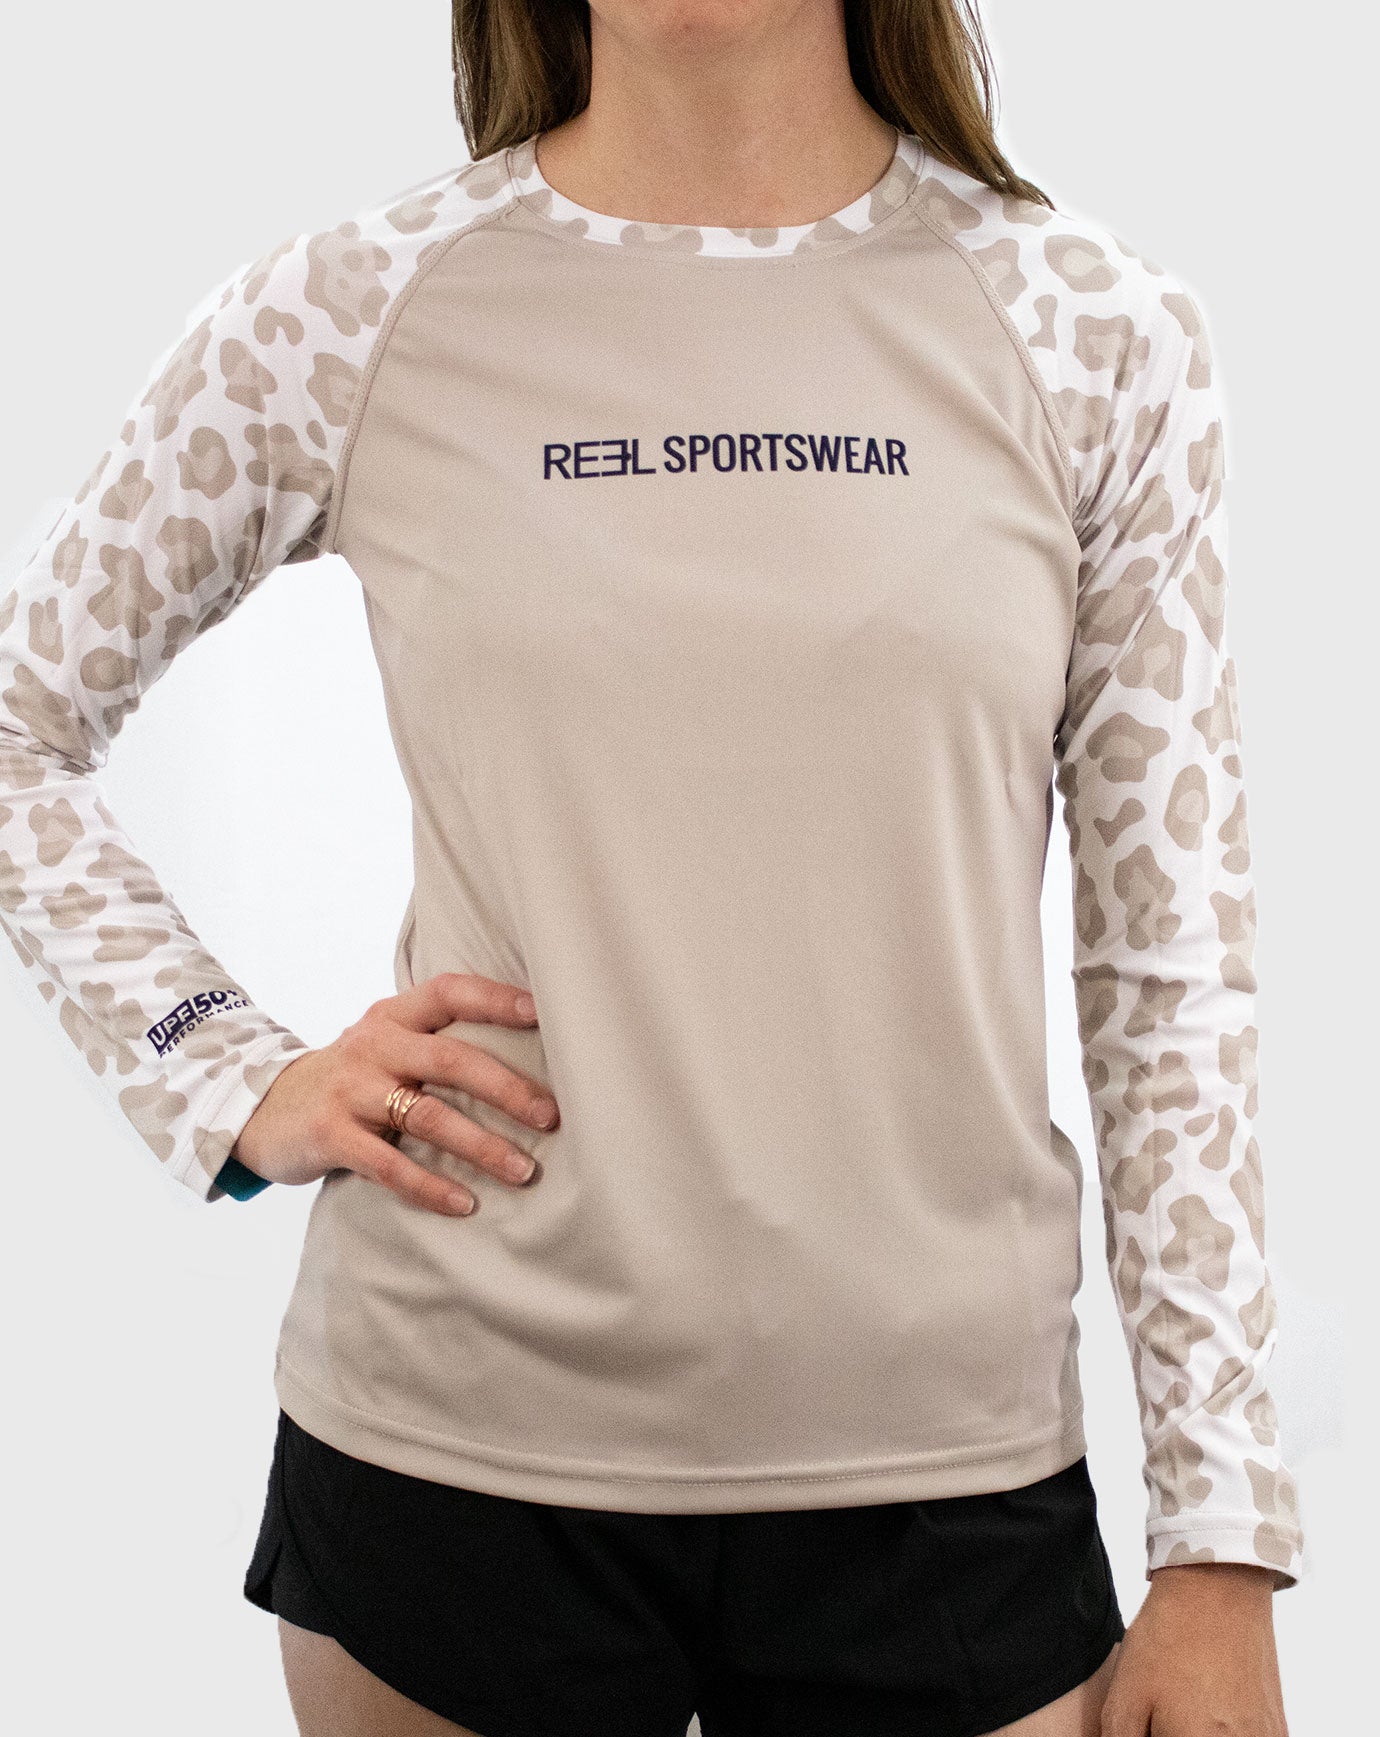 Shop All Tops - Reel Sportswear